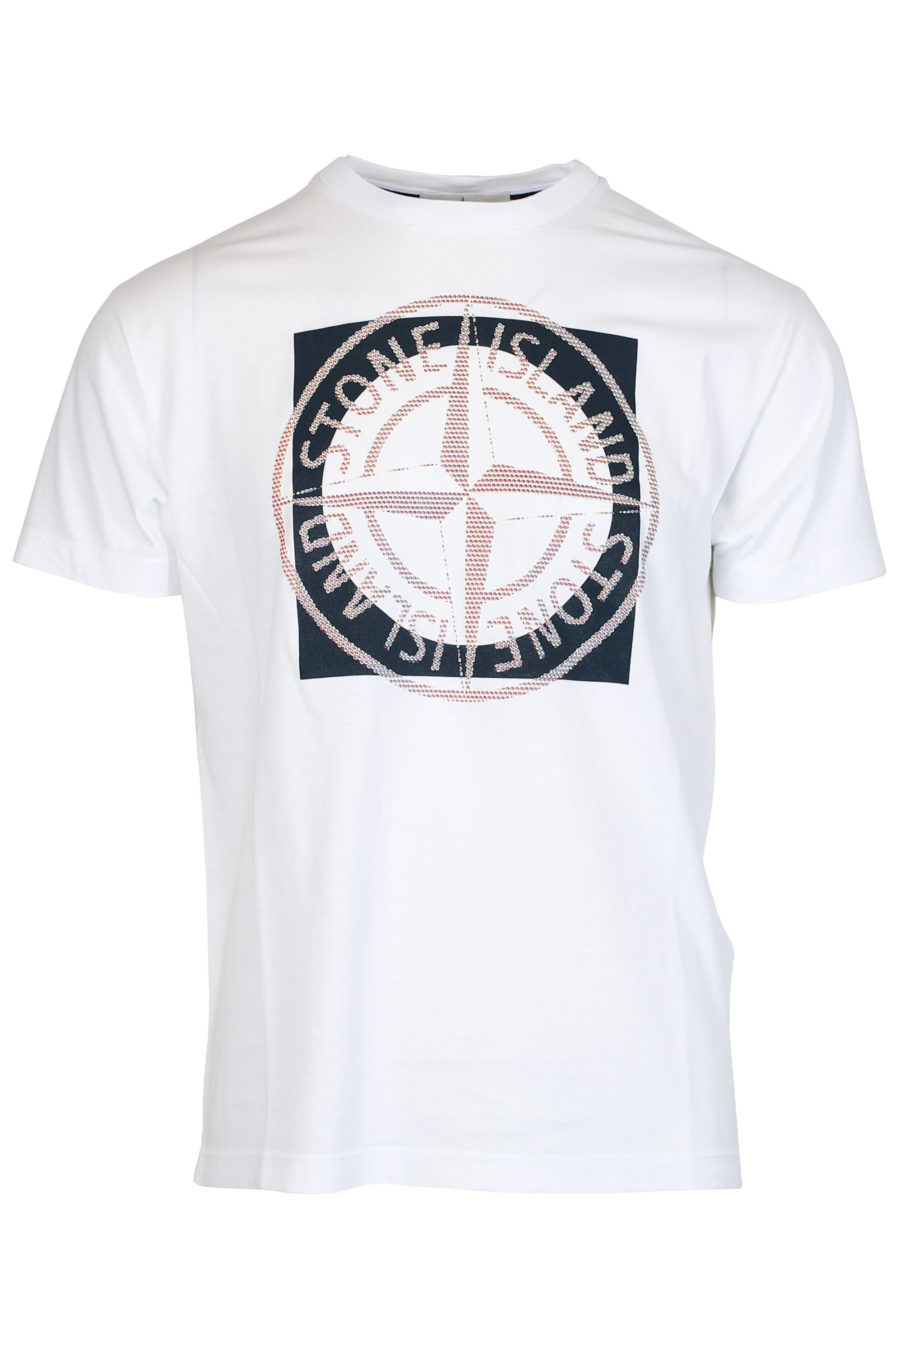 Camiseta blanca con logotipo multicolor grande - IMG 2476